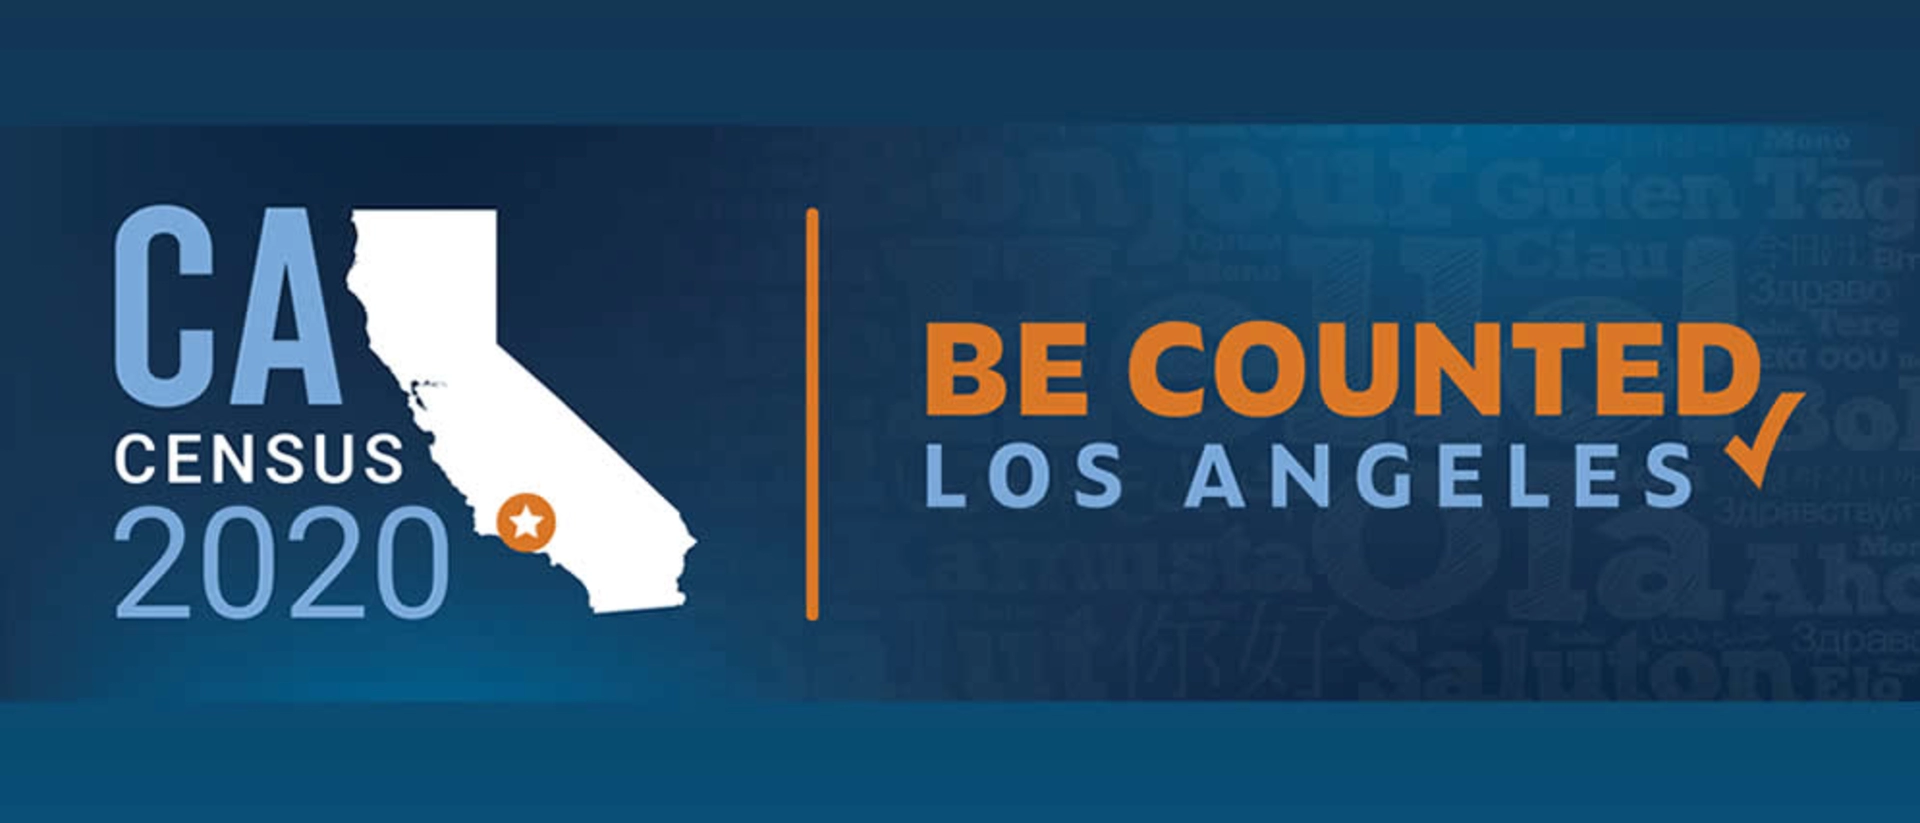 CA Census 2020 Banner